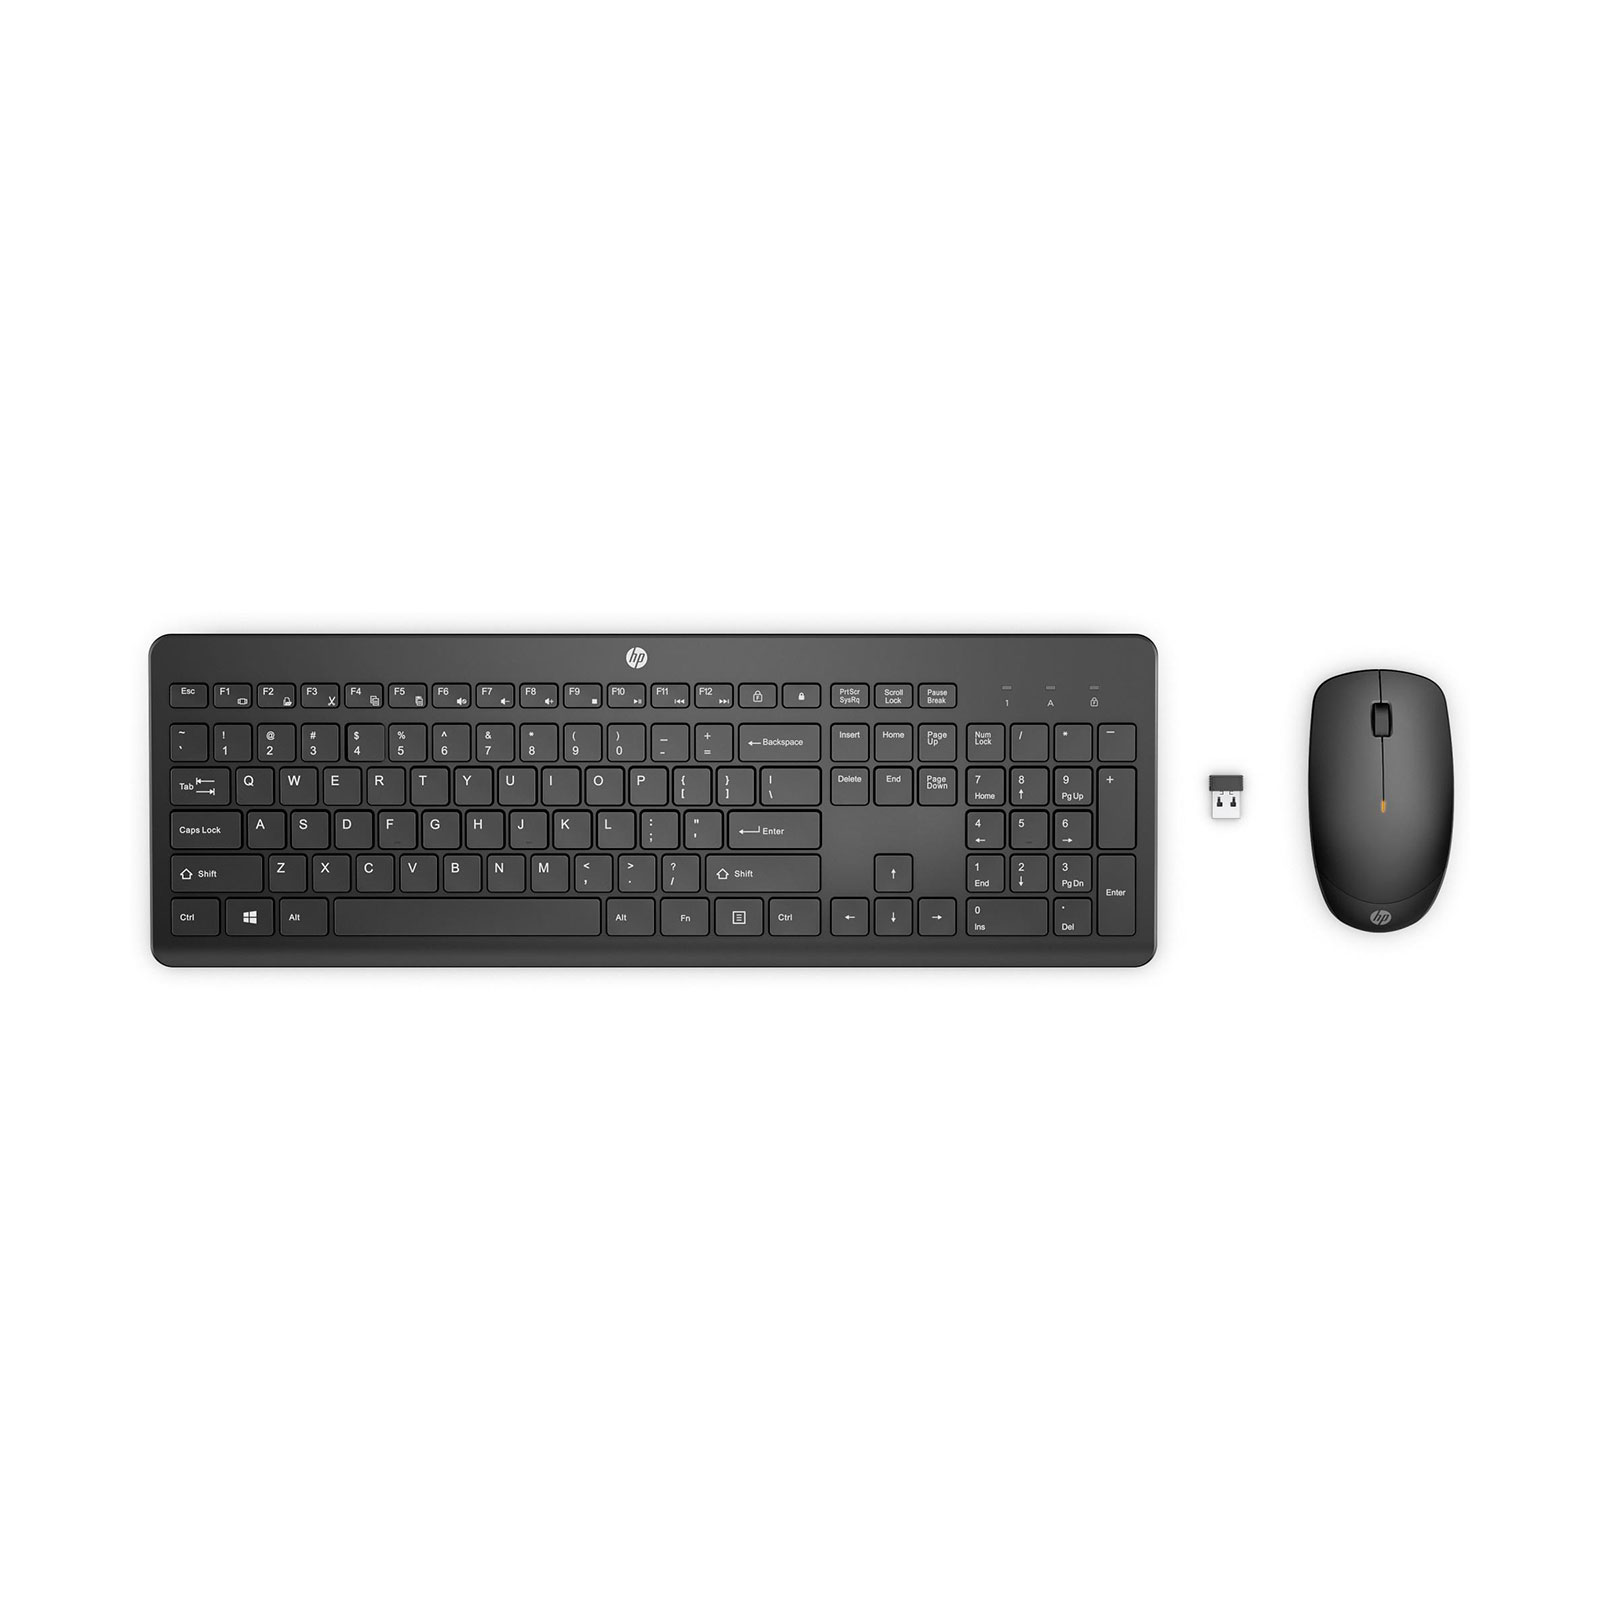 HP 230 bk Wireless Tastatur Maus 